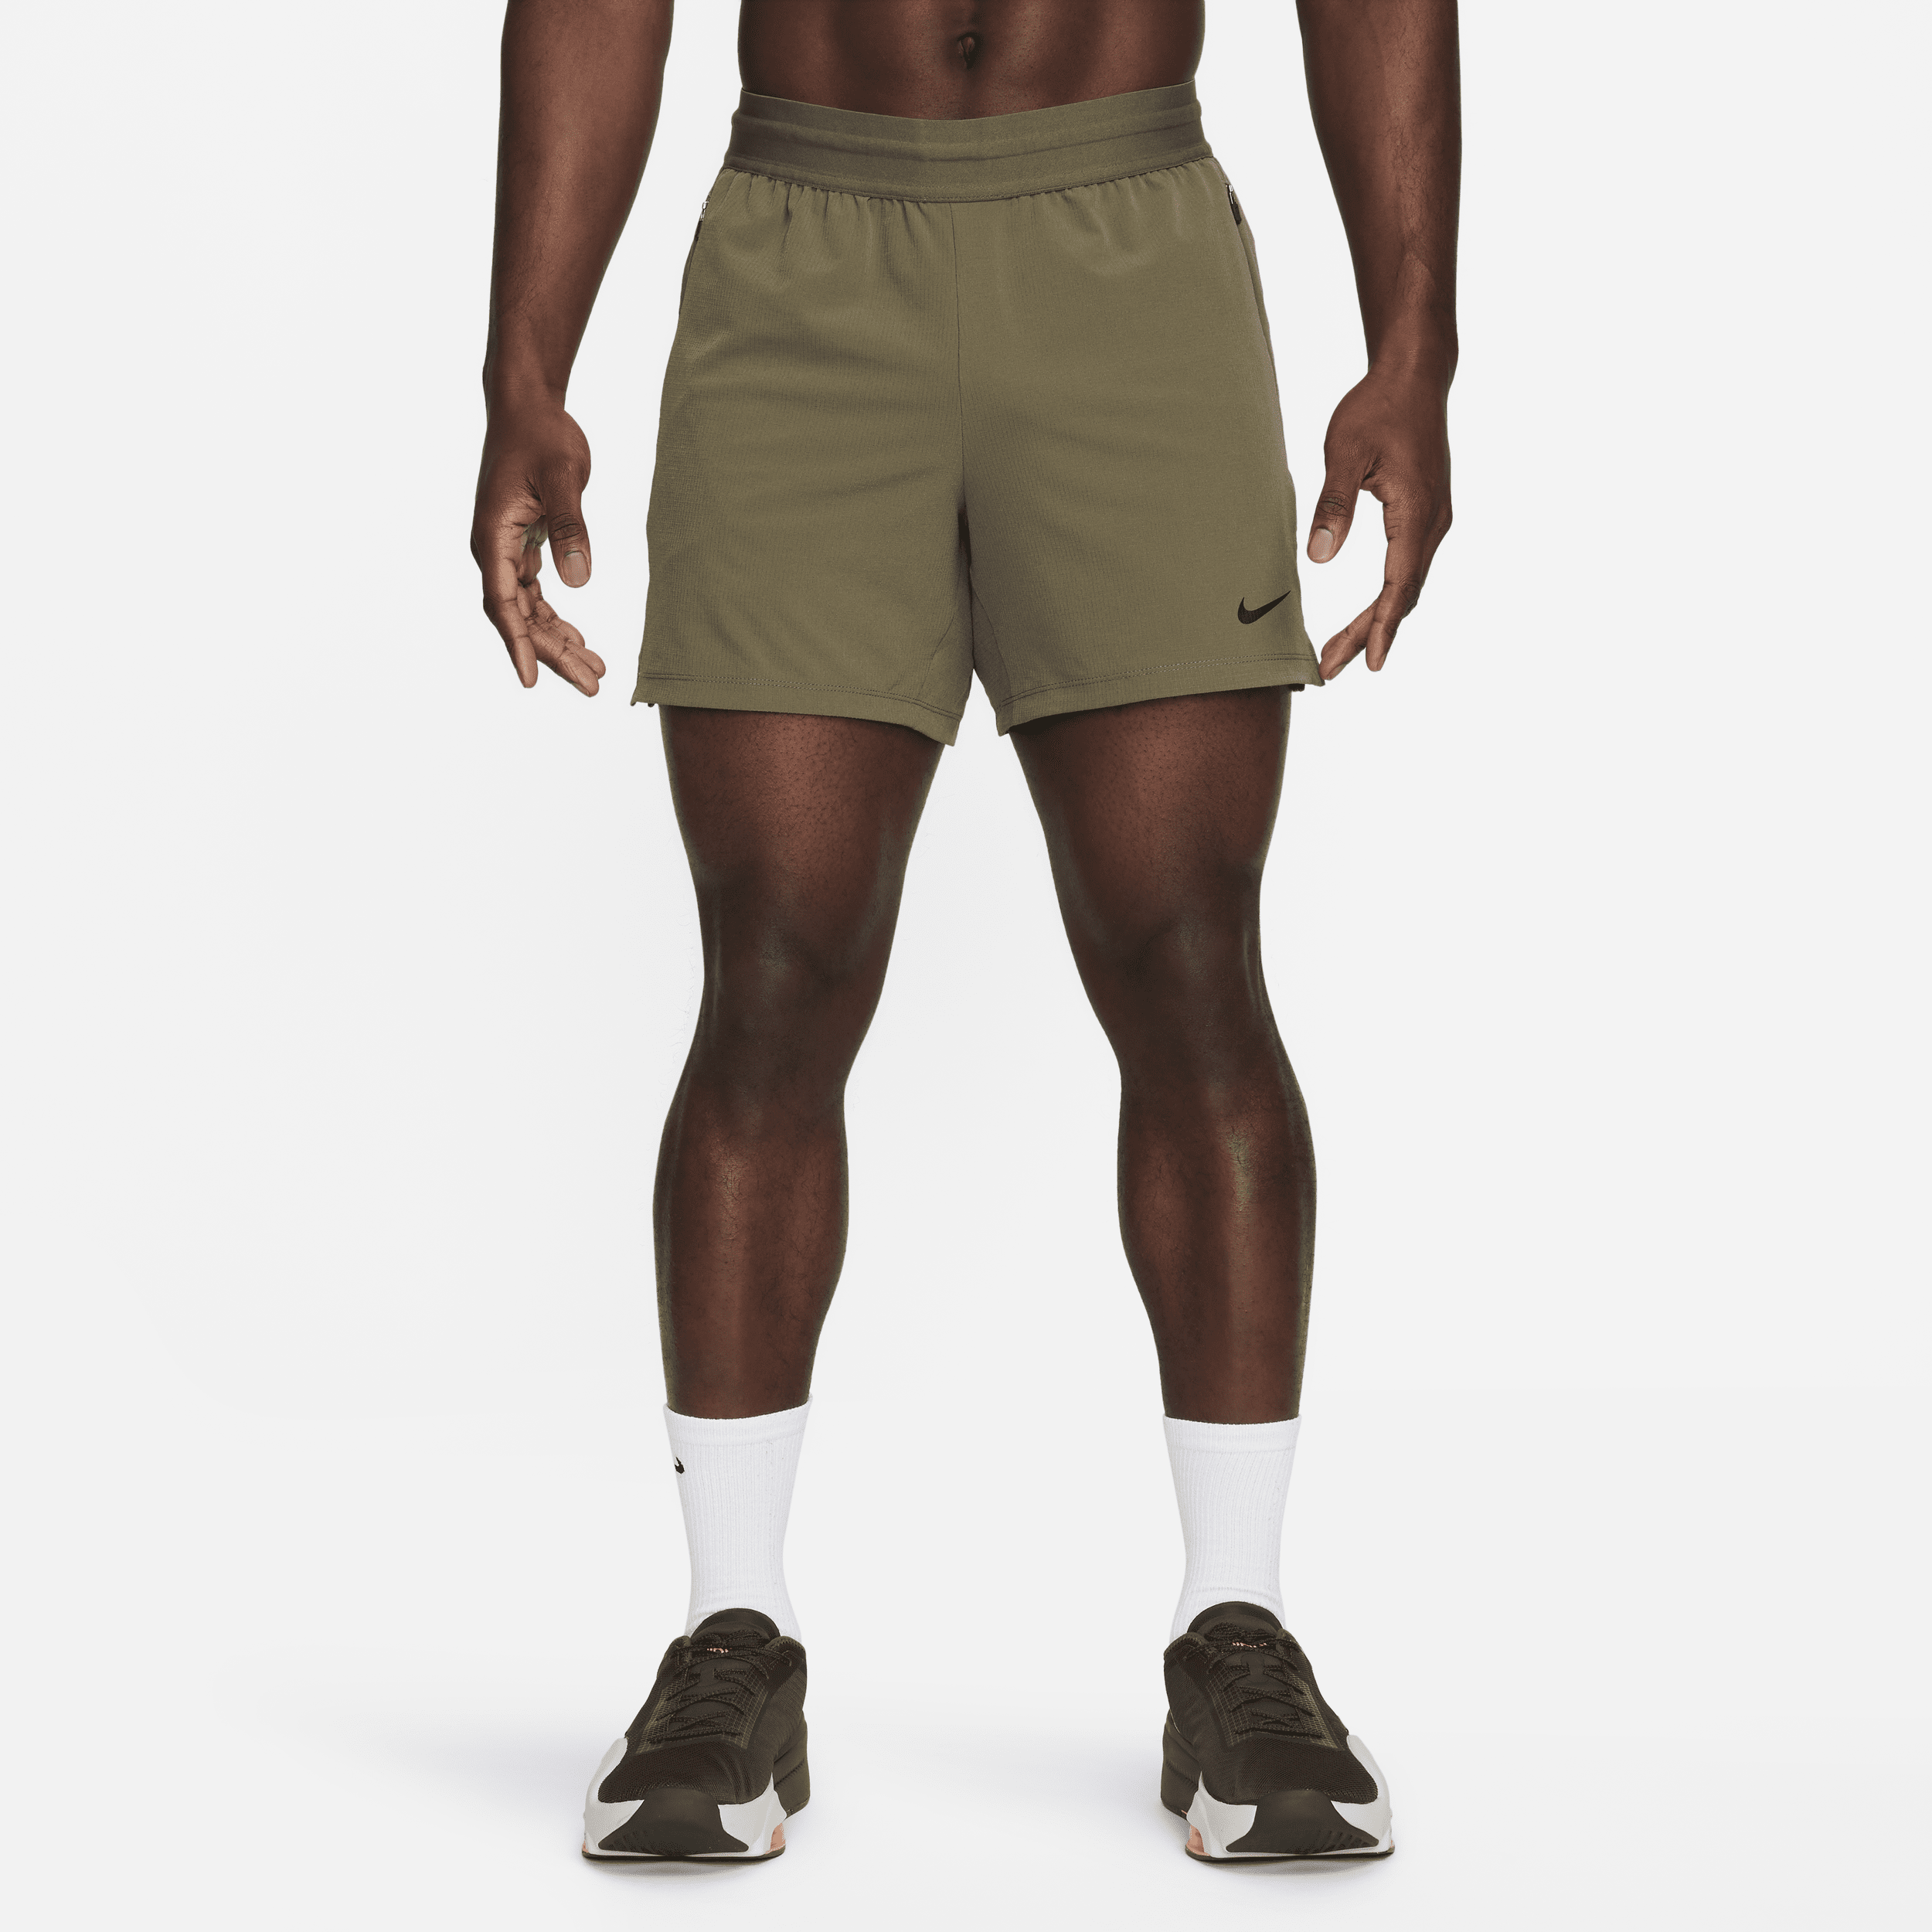 Shorts da fitness Dri-FIT non foderati 13 cm Nike Flex Rep – Uomo - Verde